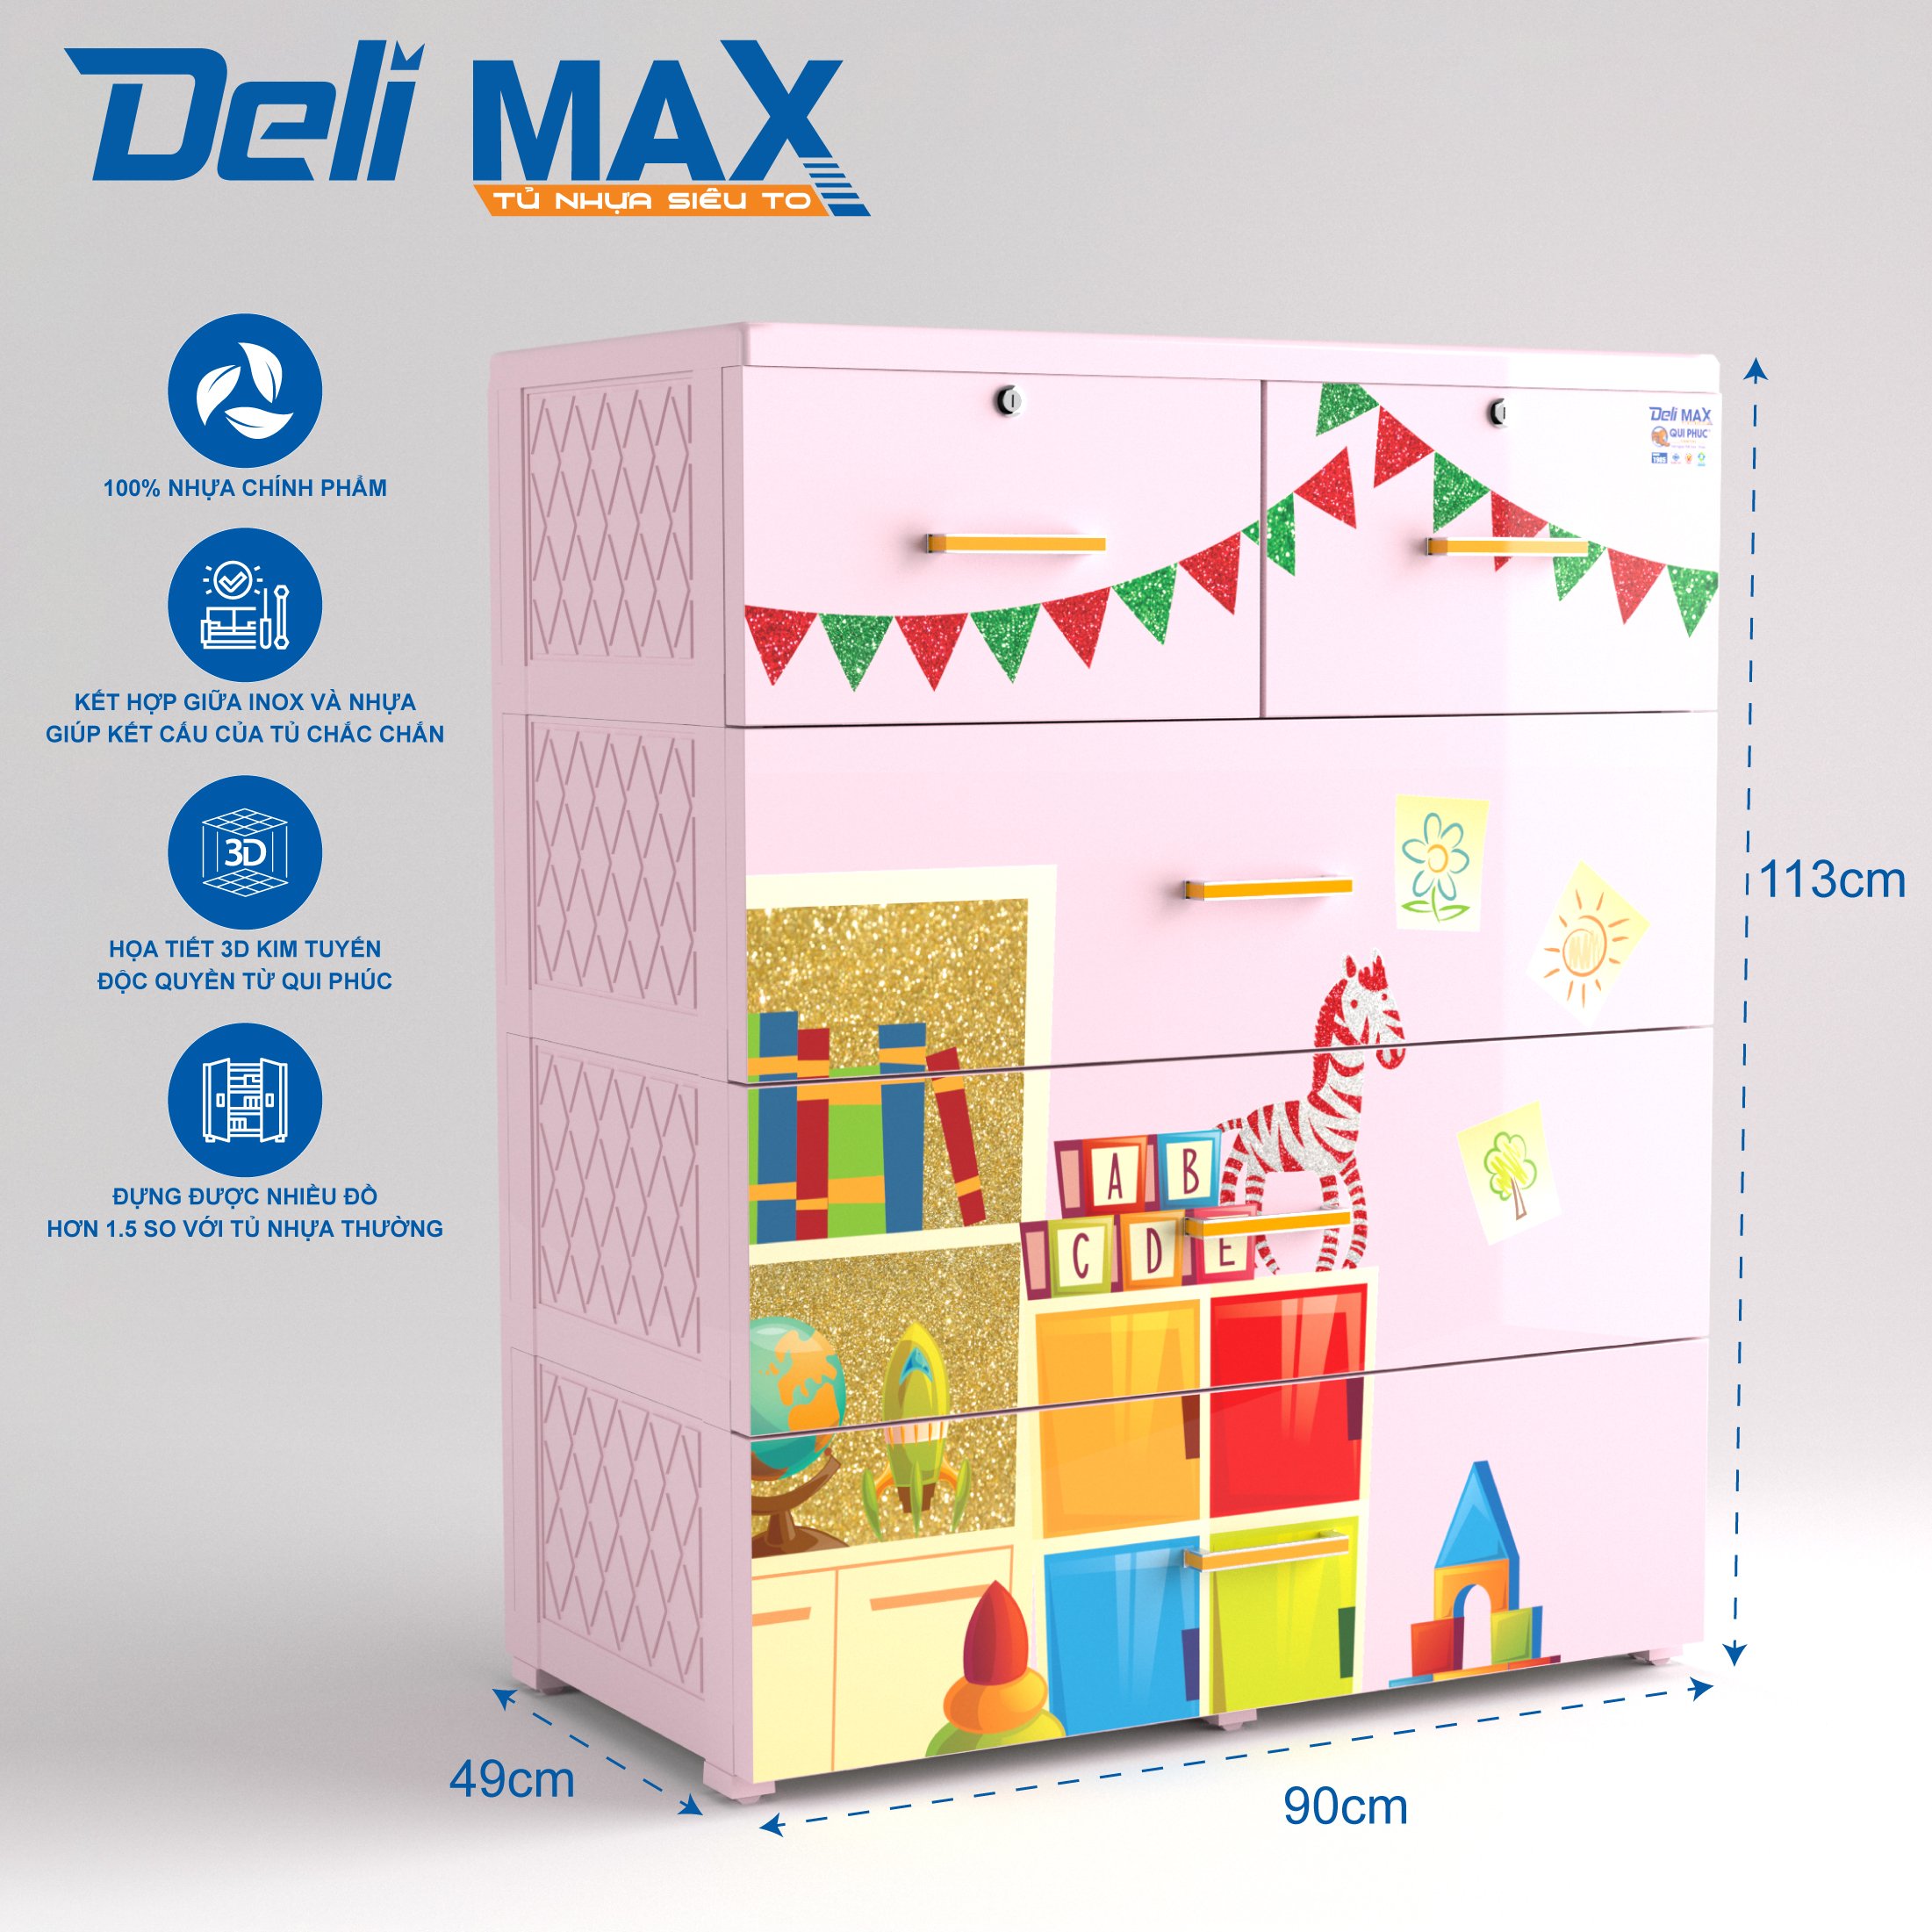 Tủ nhựa DELI MAX 4 tầng (QPN.176) - Siêu to siêu chắc, nhựa chính phẩm 100% an toàn cho người dùng